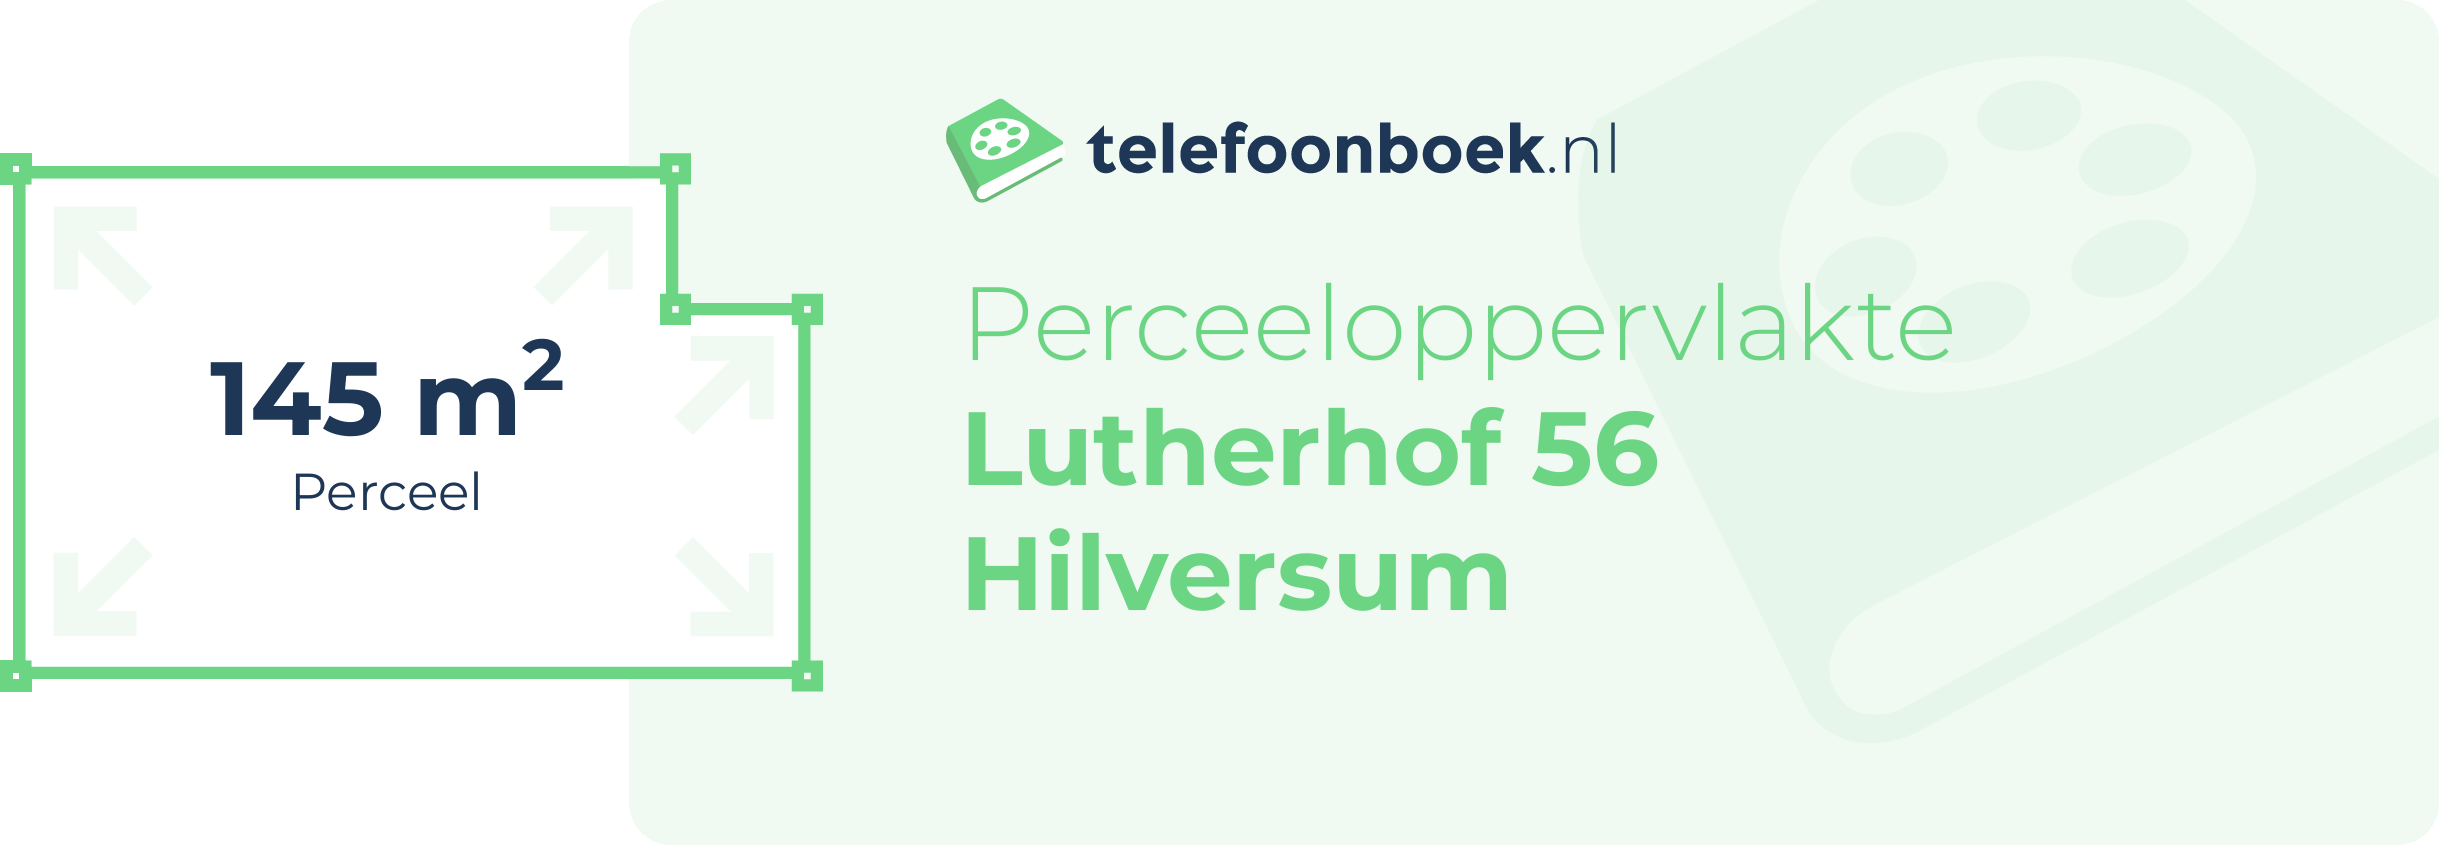 Perceeloppervlakte Lutherhof 56 Hilversum